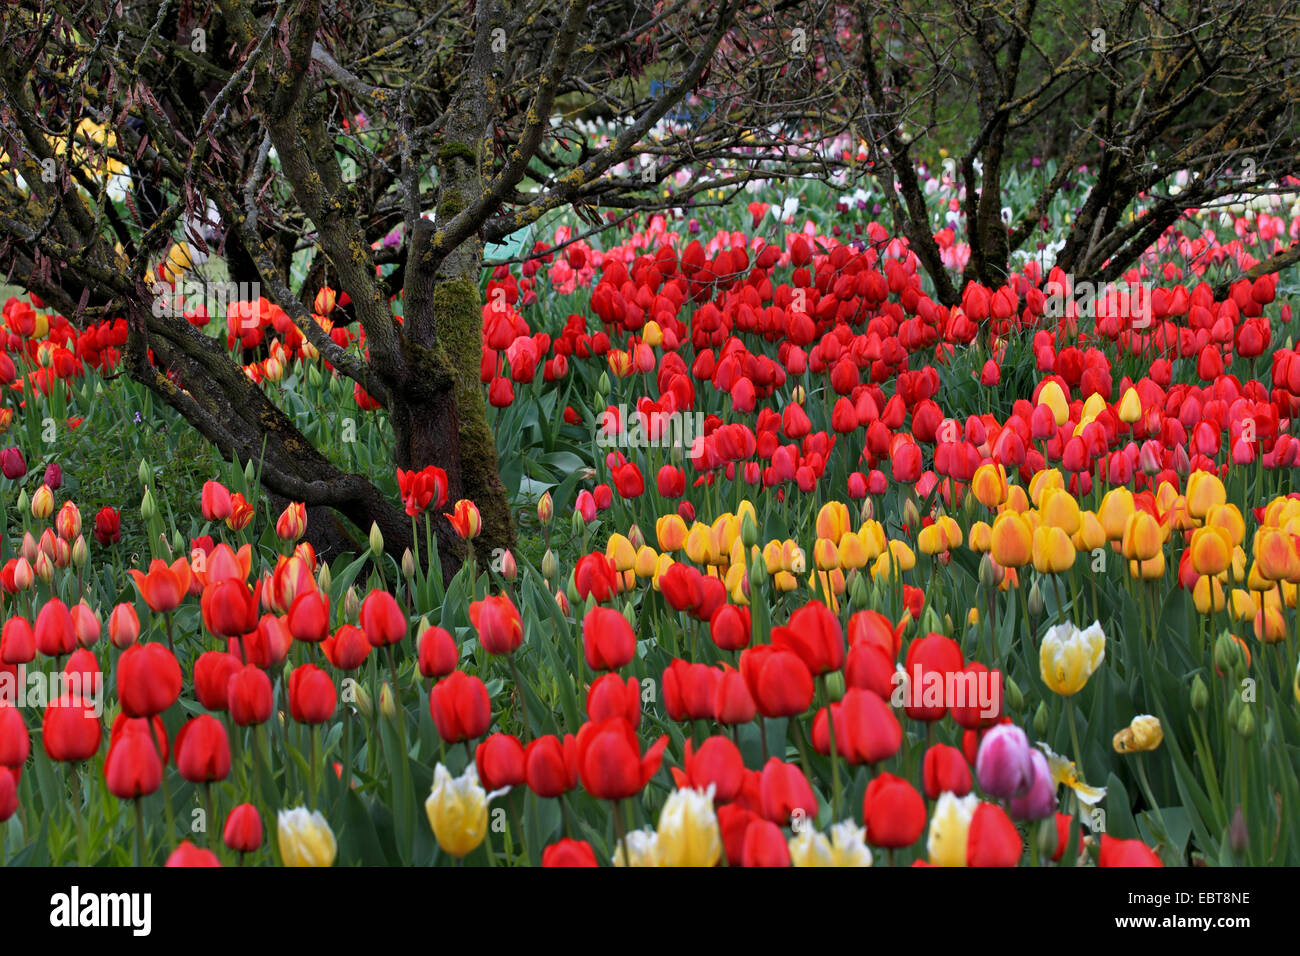 Giardino in comune tulip (Tulipa gesneriana), in grande numero e colori diversi in un letto di fiori in un parco, Germania Foto Stock